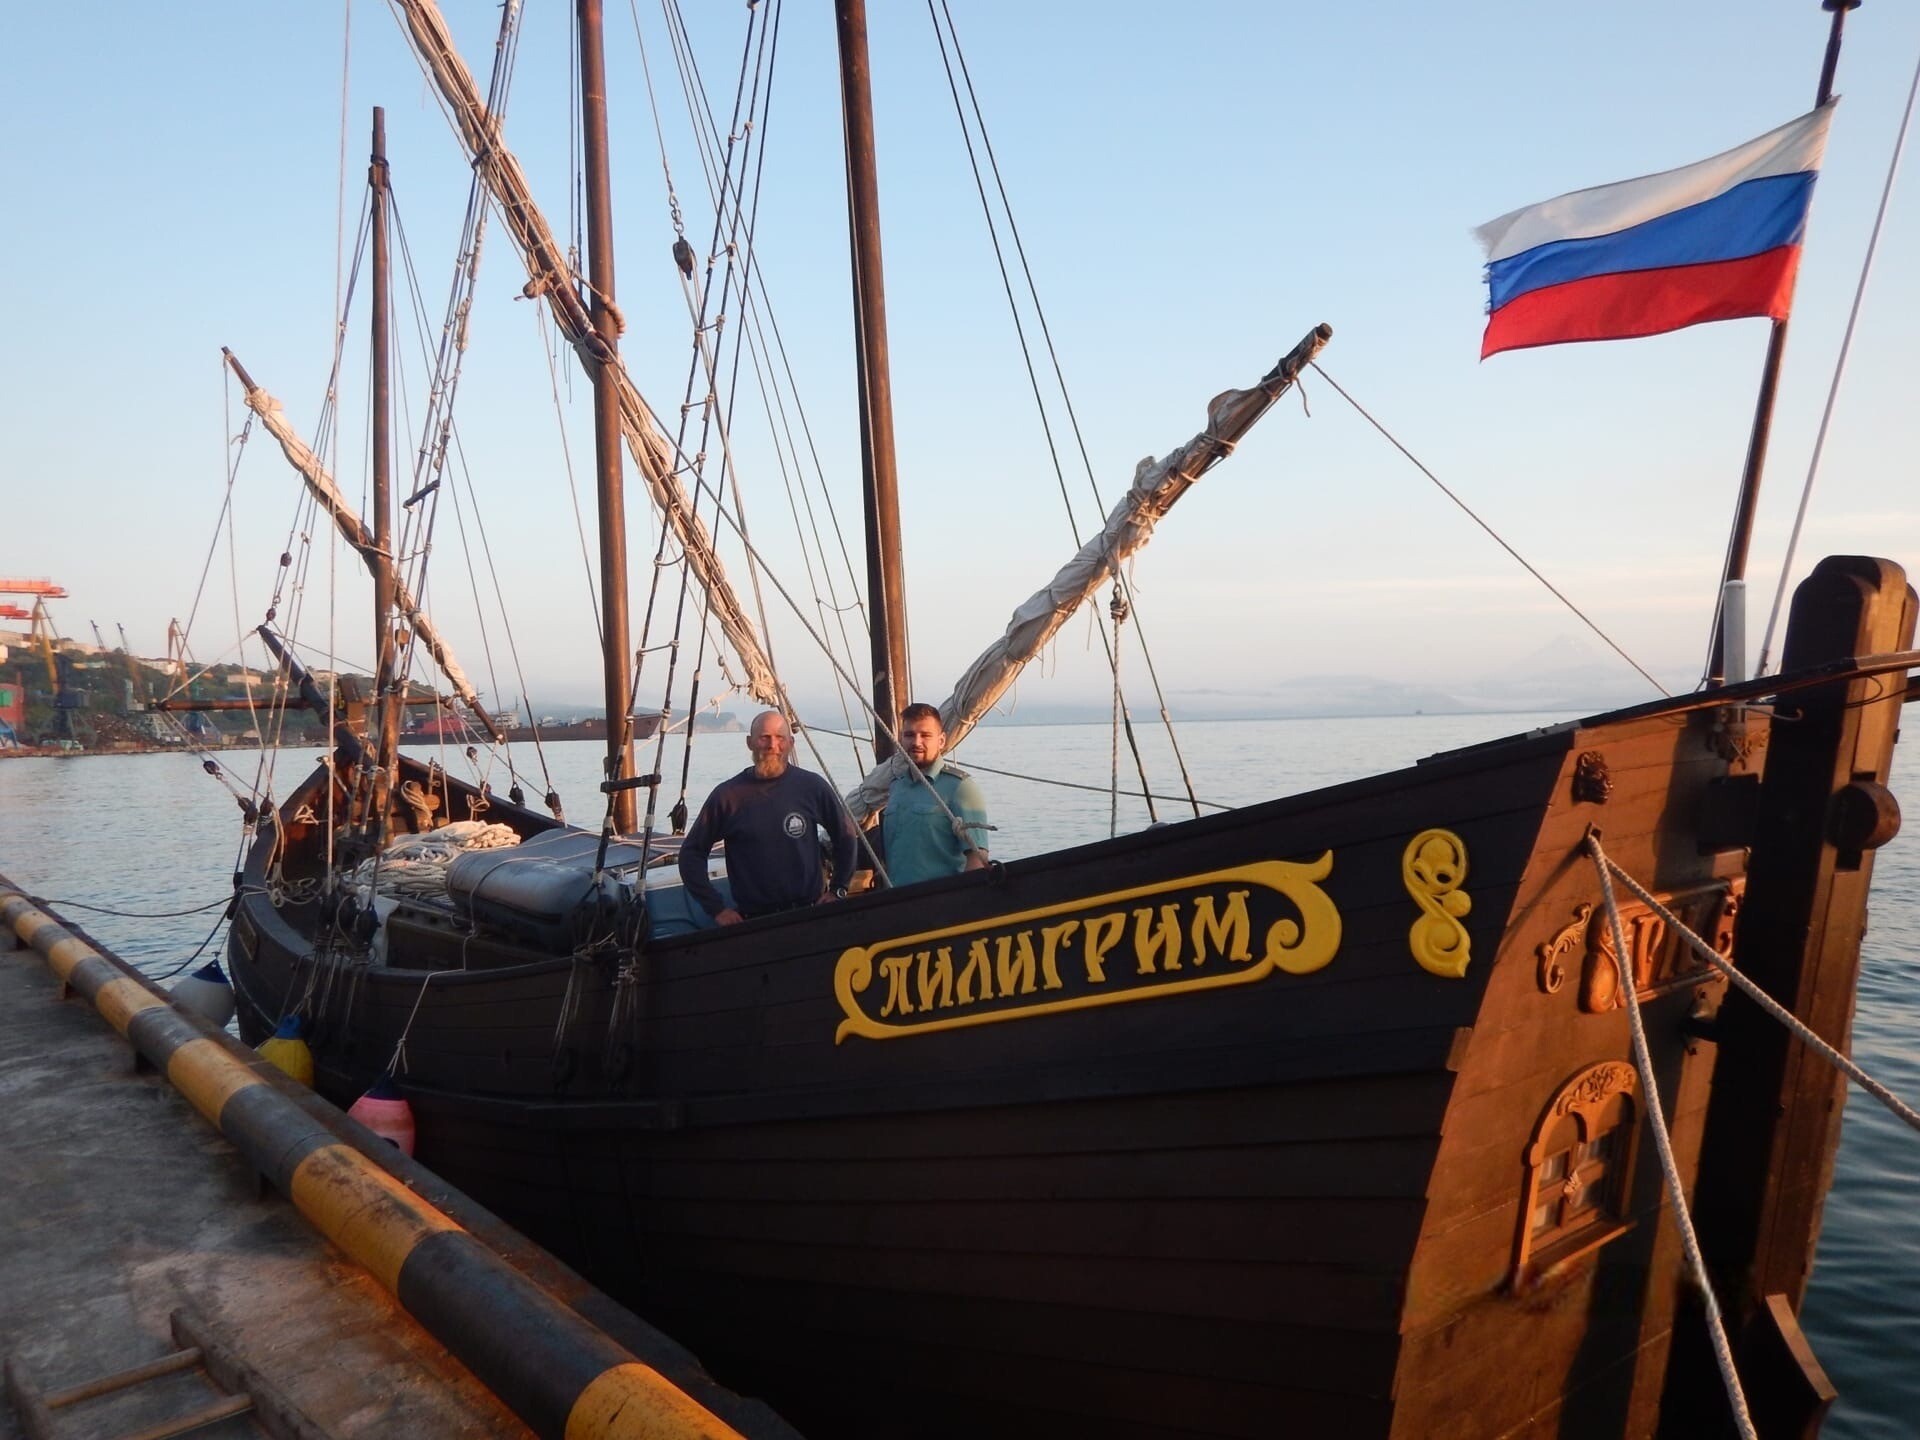 Карельская ладья "Пилигрим" прибыла к берегам Камчатки, сообщает таможня